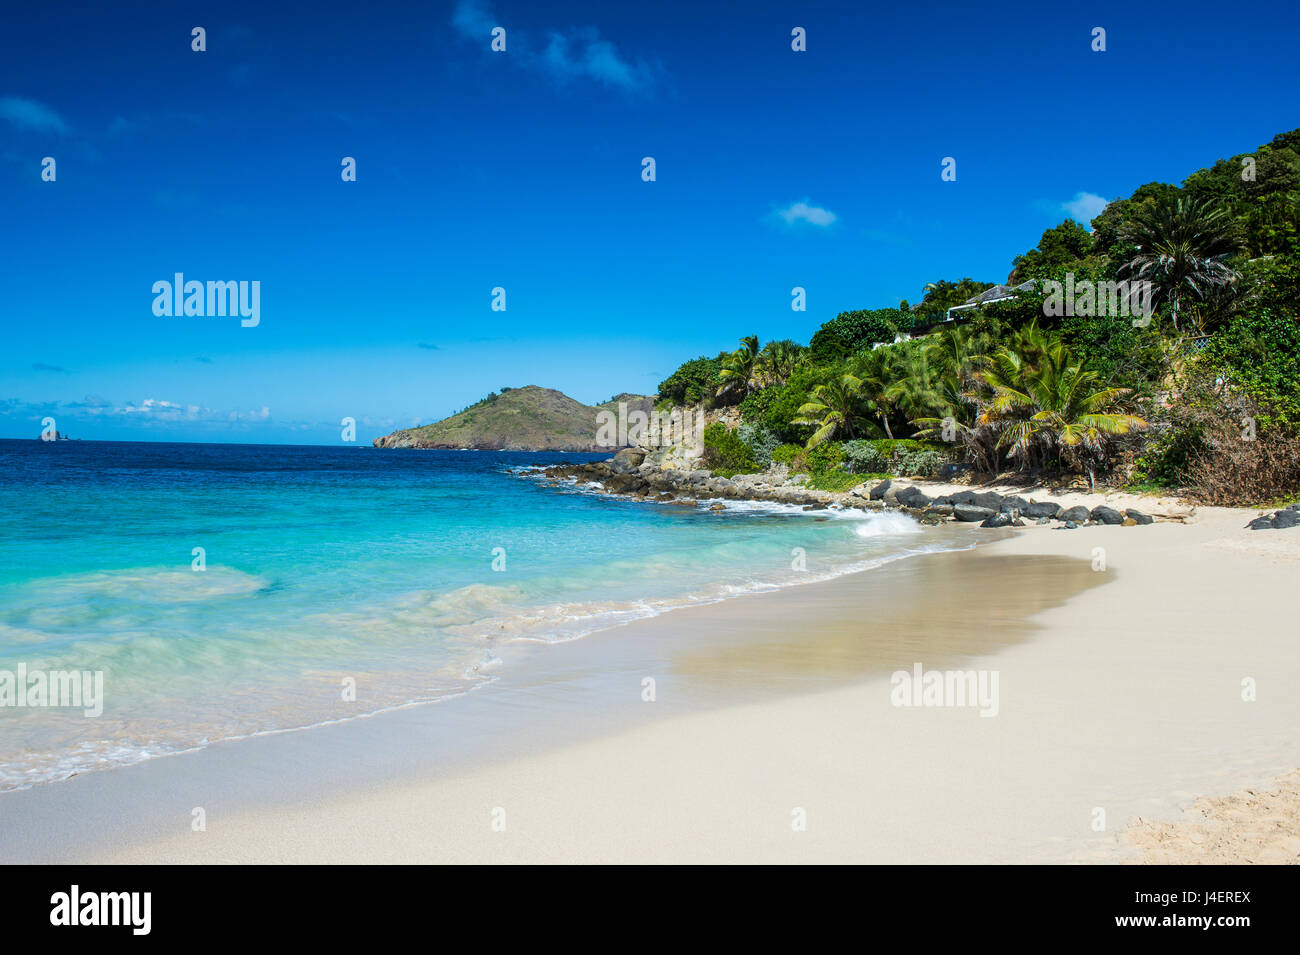 Flamand Plage, St Barth (Saint Barthelemy), Petites Antilles, Antilles, Caraïbes, Amérique Centrale Banque D'Images